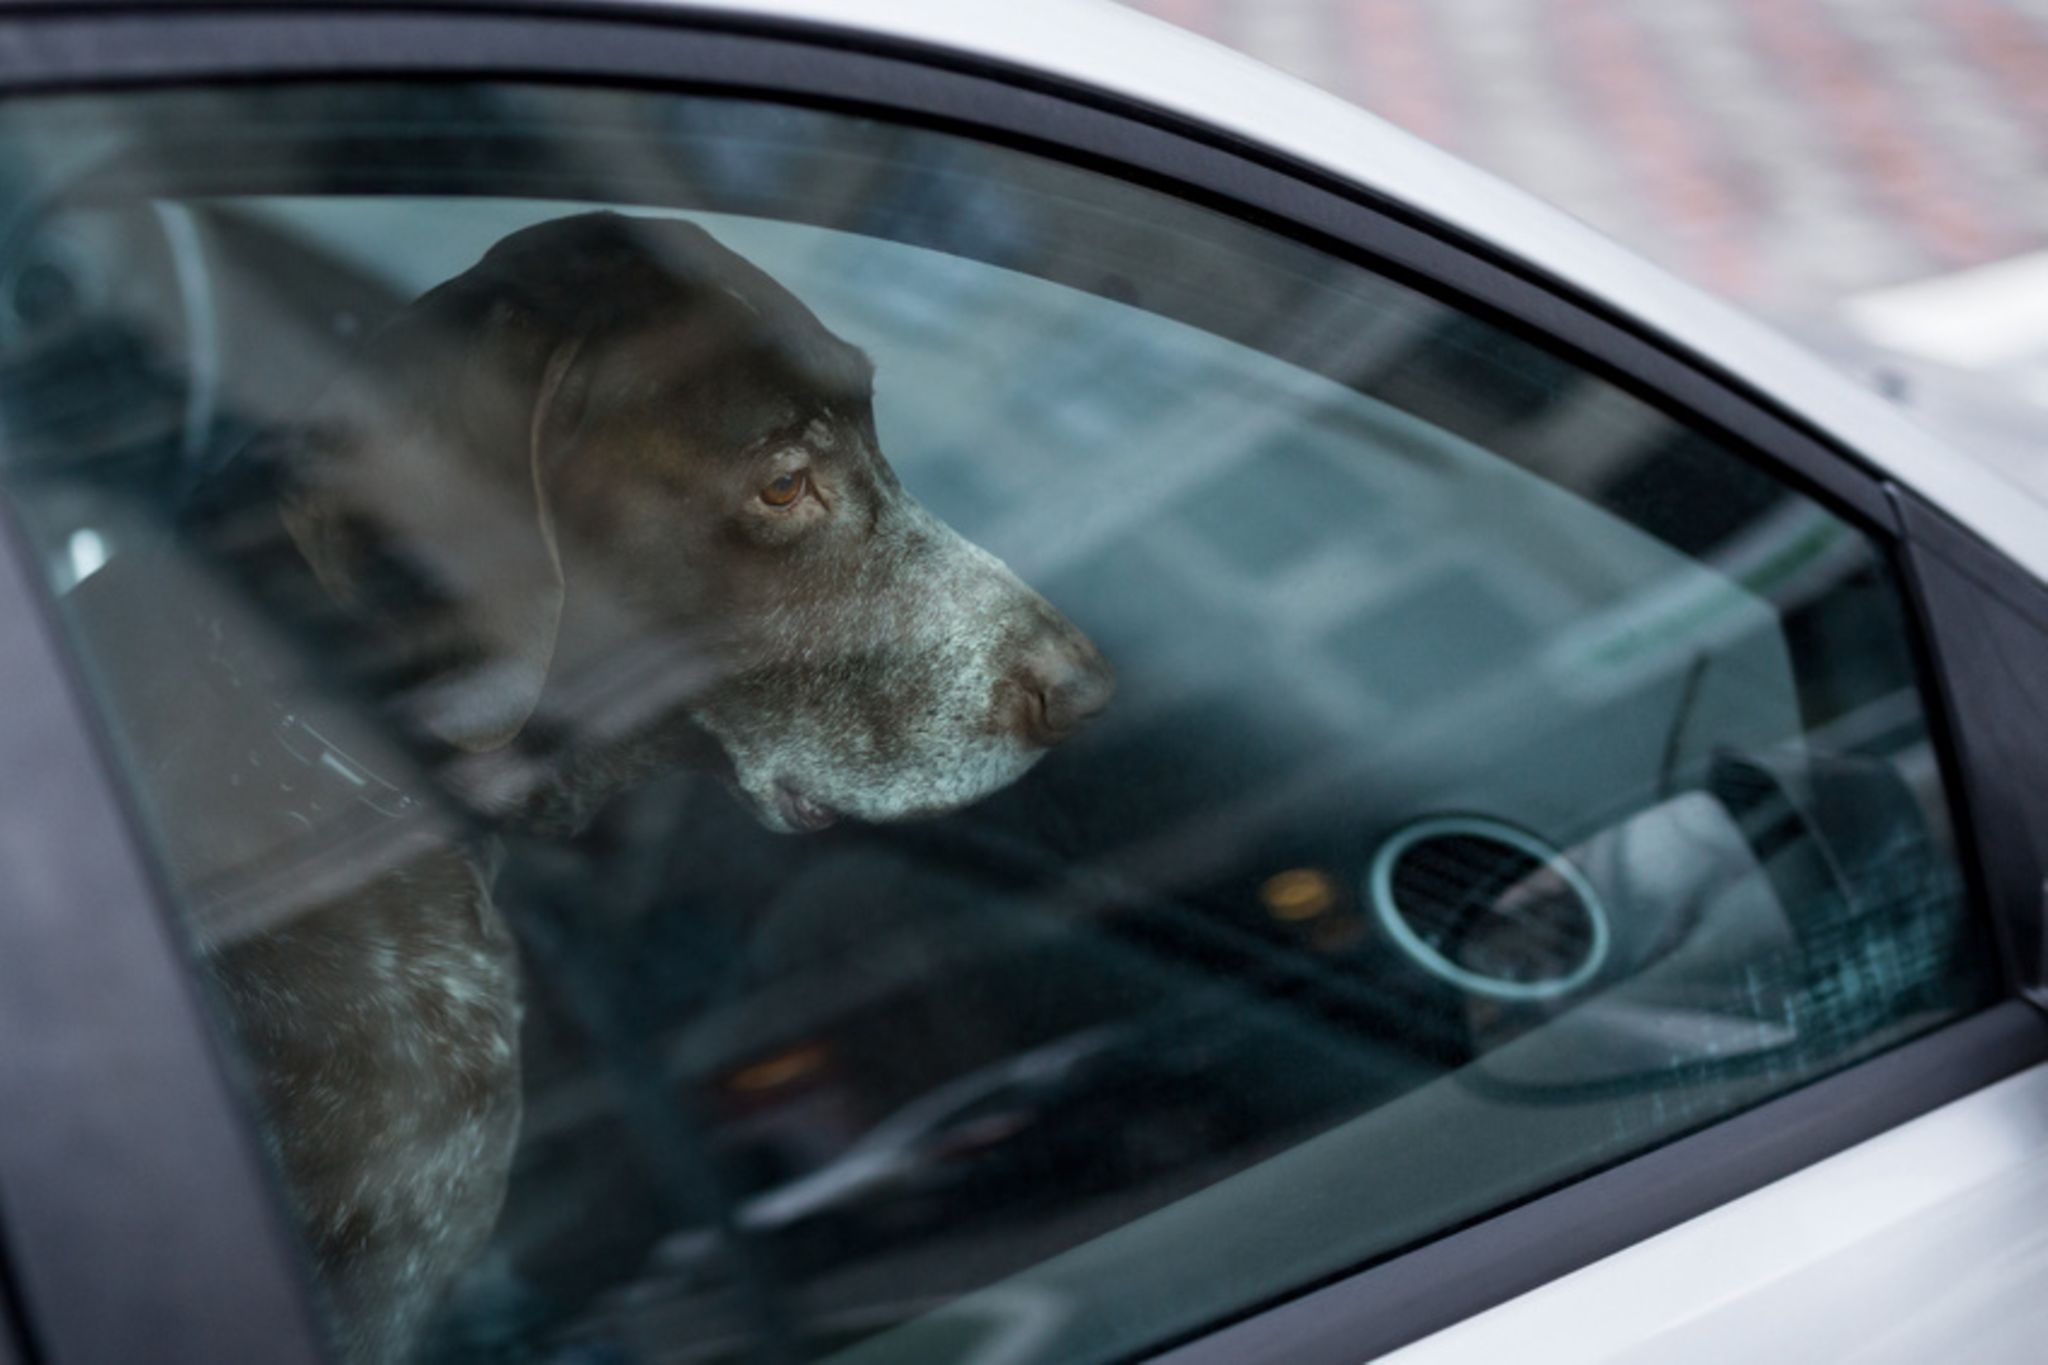 Hitze im Auto: Darf ich die Scheibe einschlagen, um einen Hund zu retten? -  [GEO]